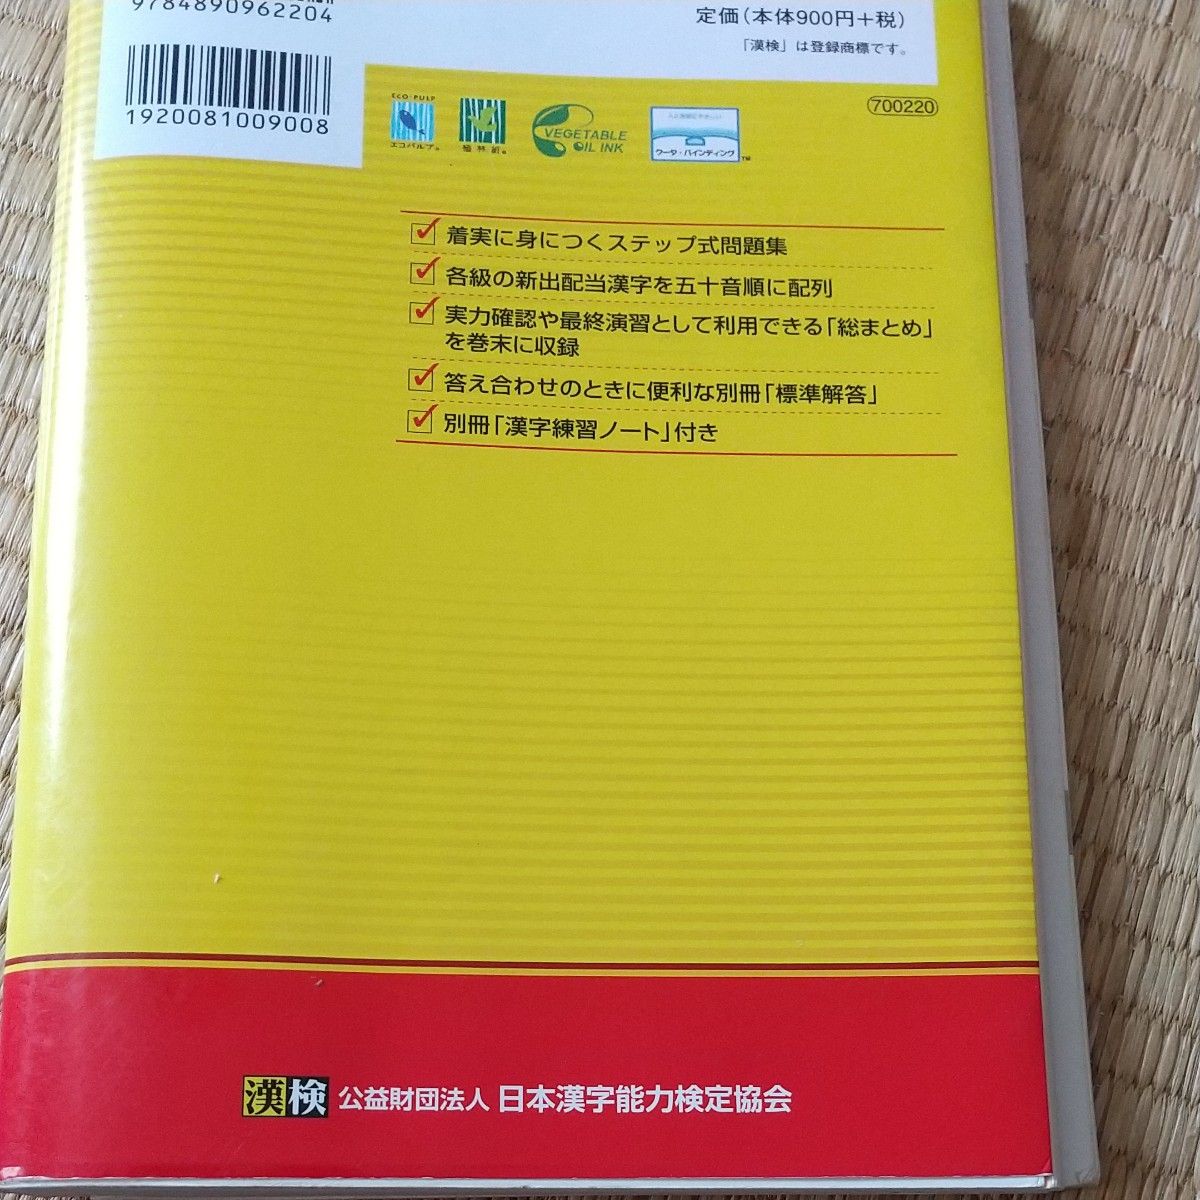 漢検 漢字学習ステップ 過去問題集 改訂三版 3級 漢字検定 漢検5級